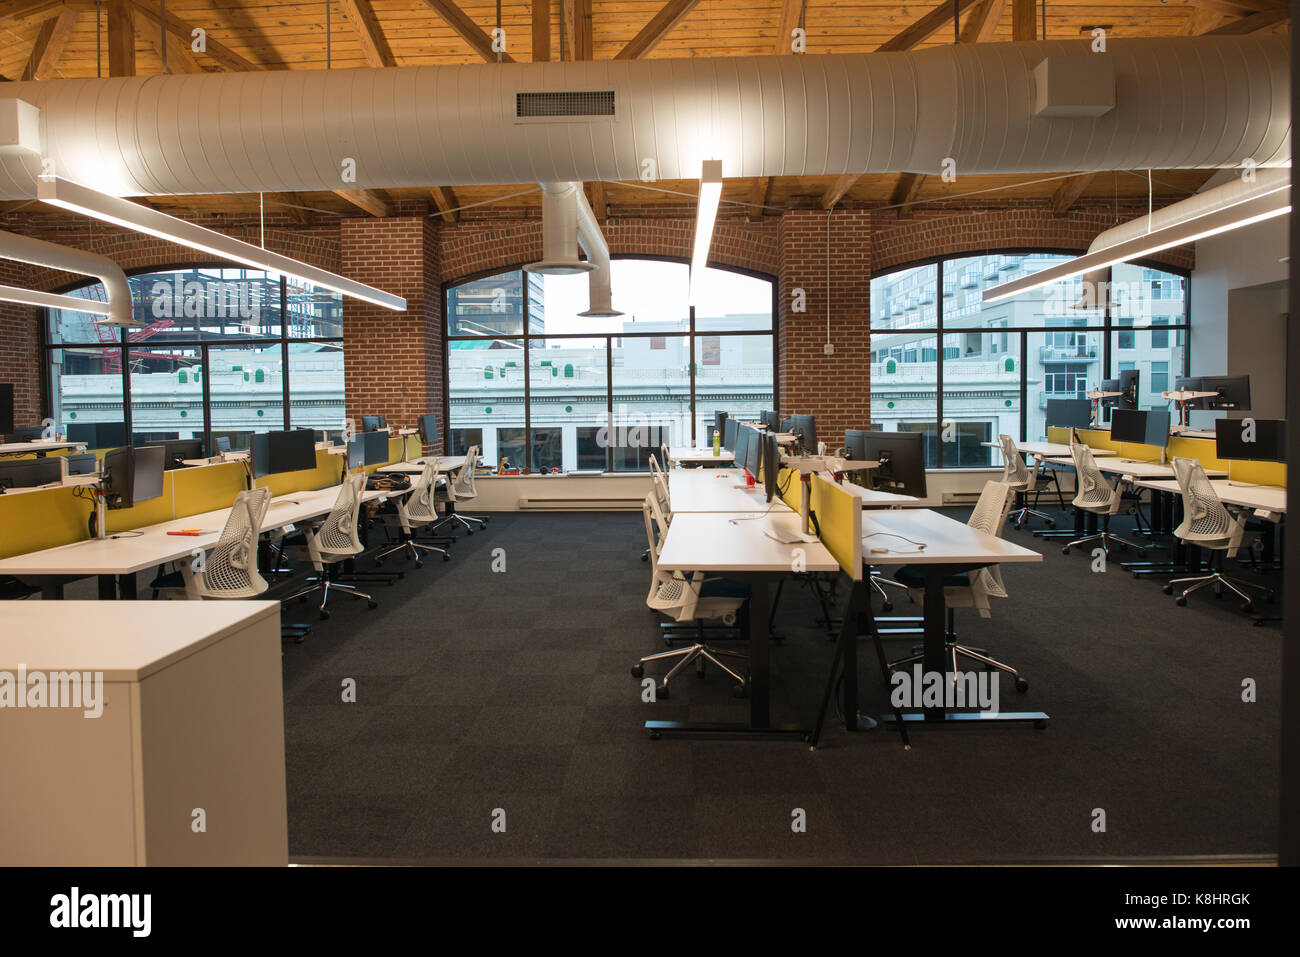 Moderno concetto aperto loft spazio per uffici con grandi finestre e luce naturale e un layout per incoraggiare la collaborazione, creatività e innovazione Foto Stock